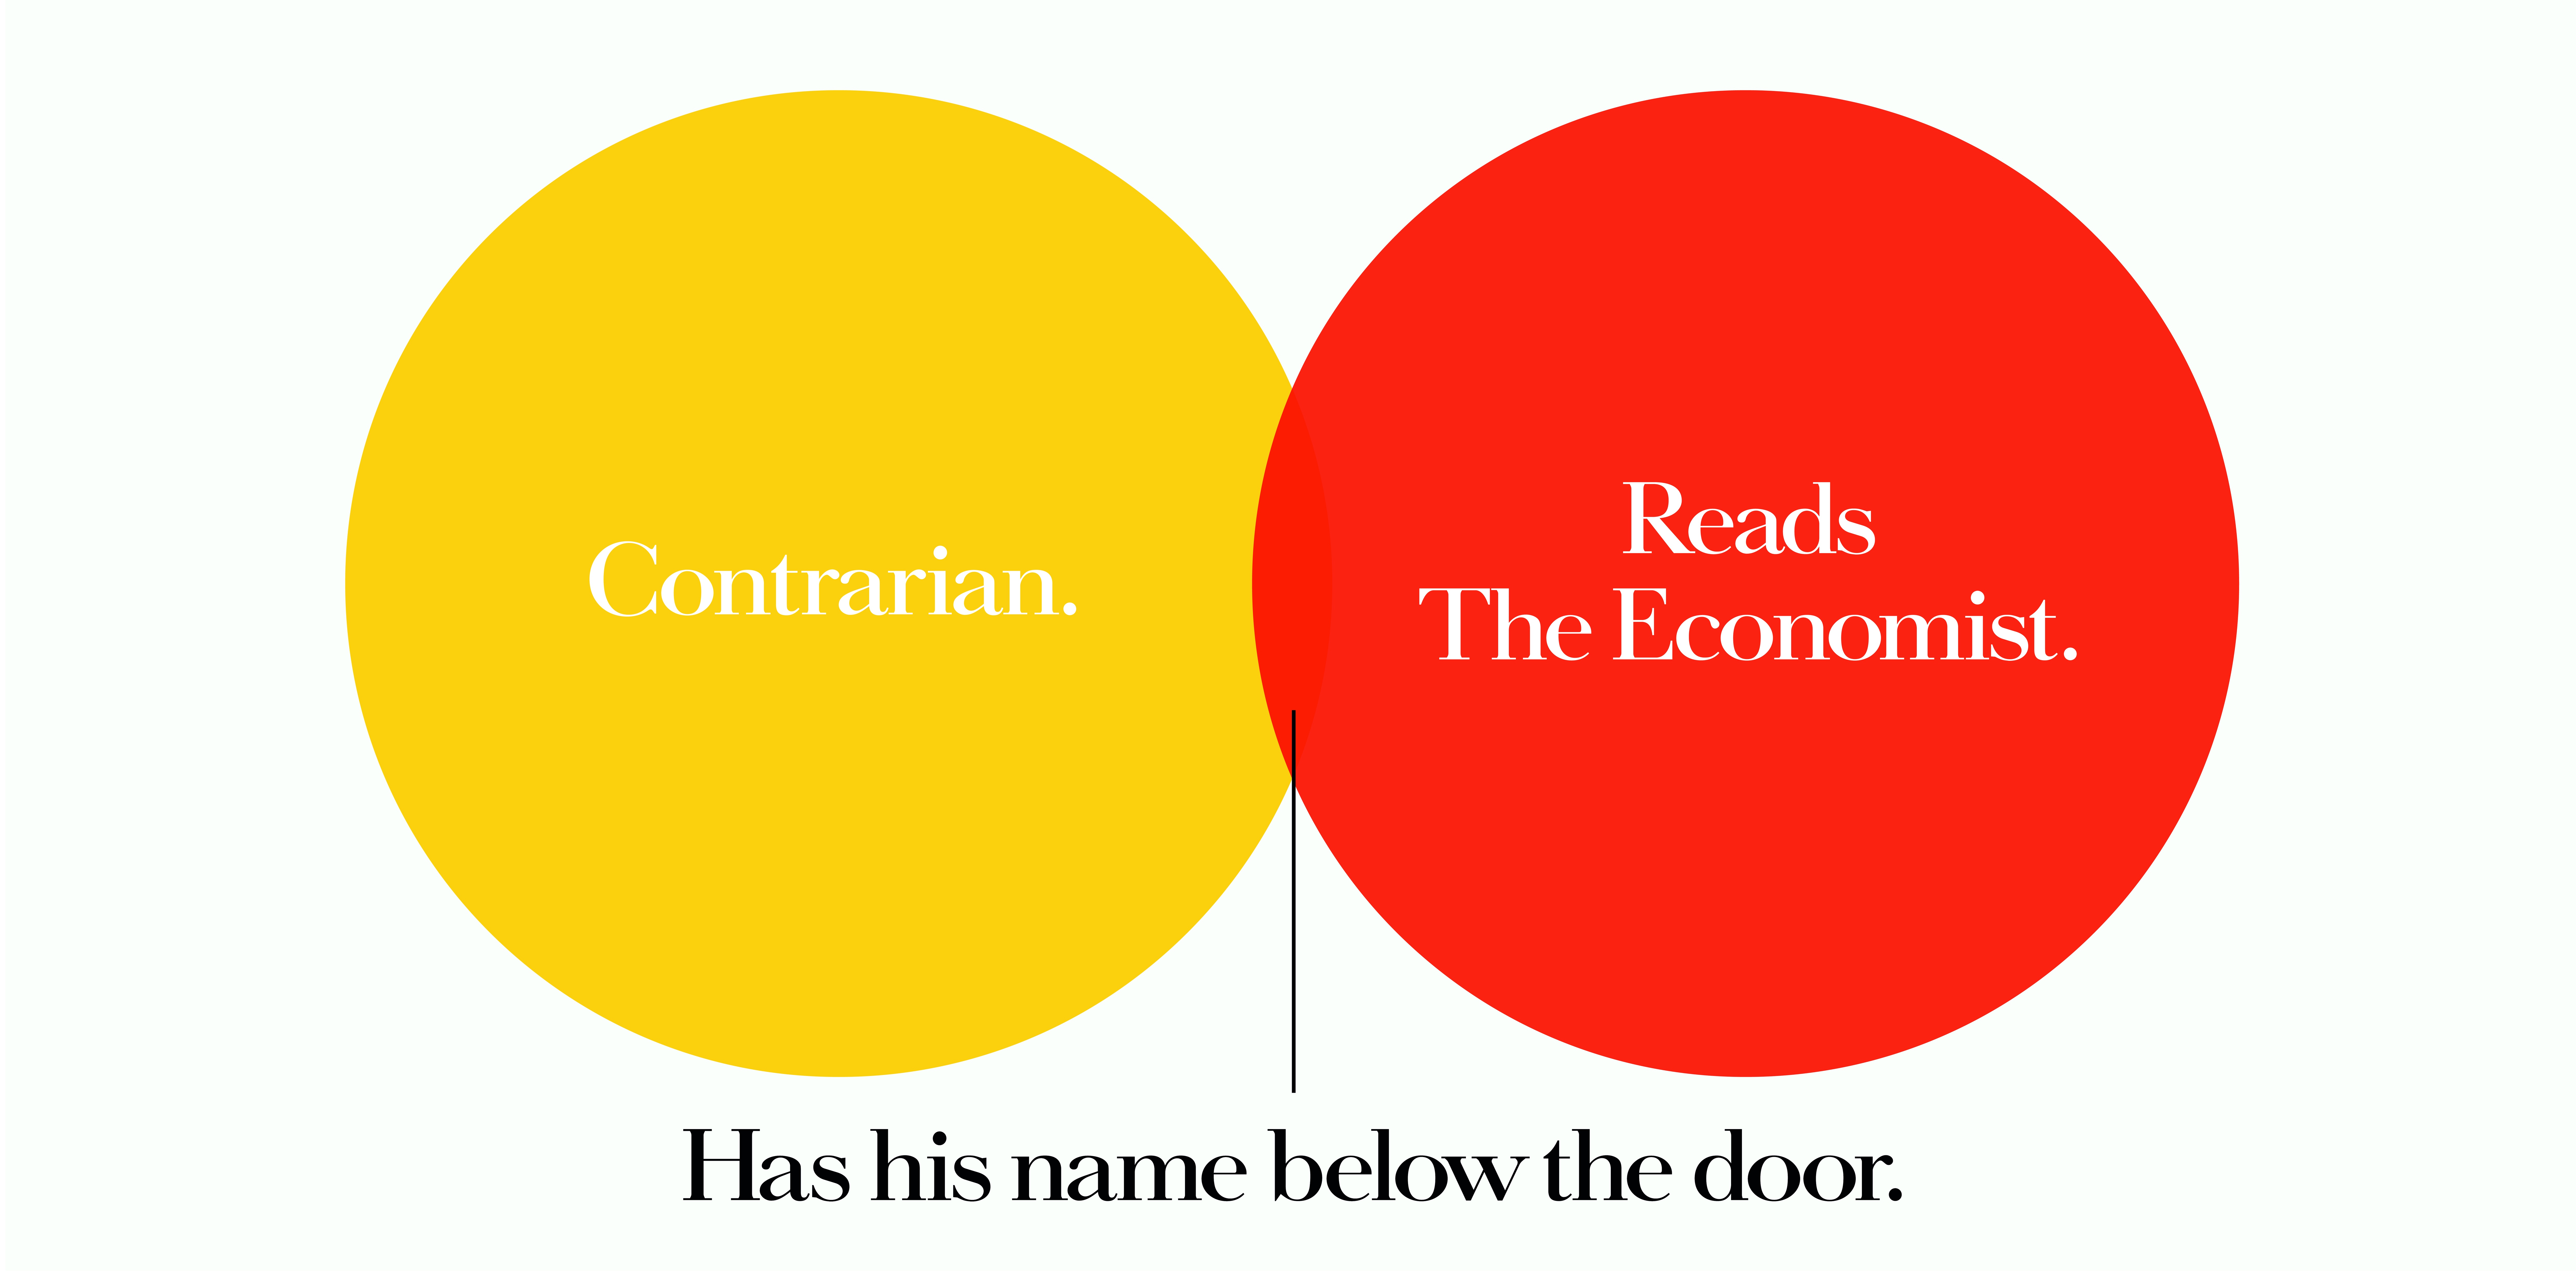 'Contrarian' The Economist, Dave Dye, Venn, 48 sheet, AMV-BBDO